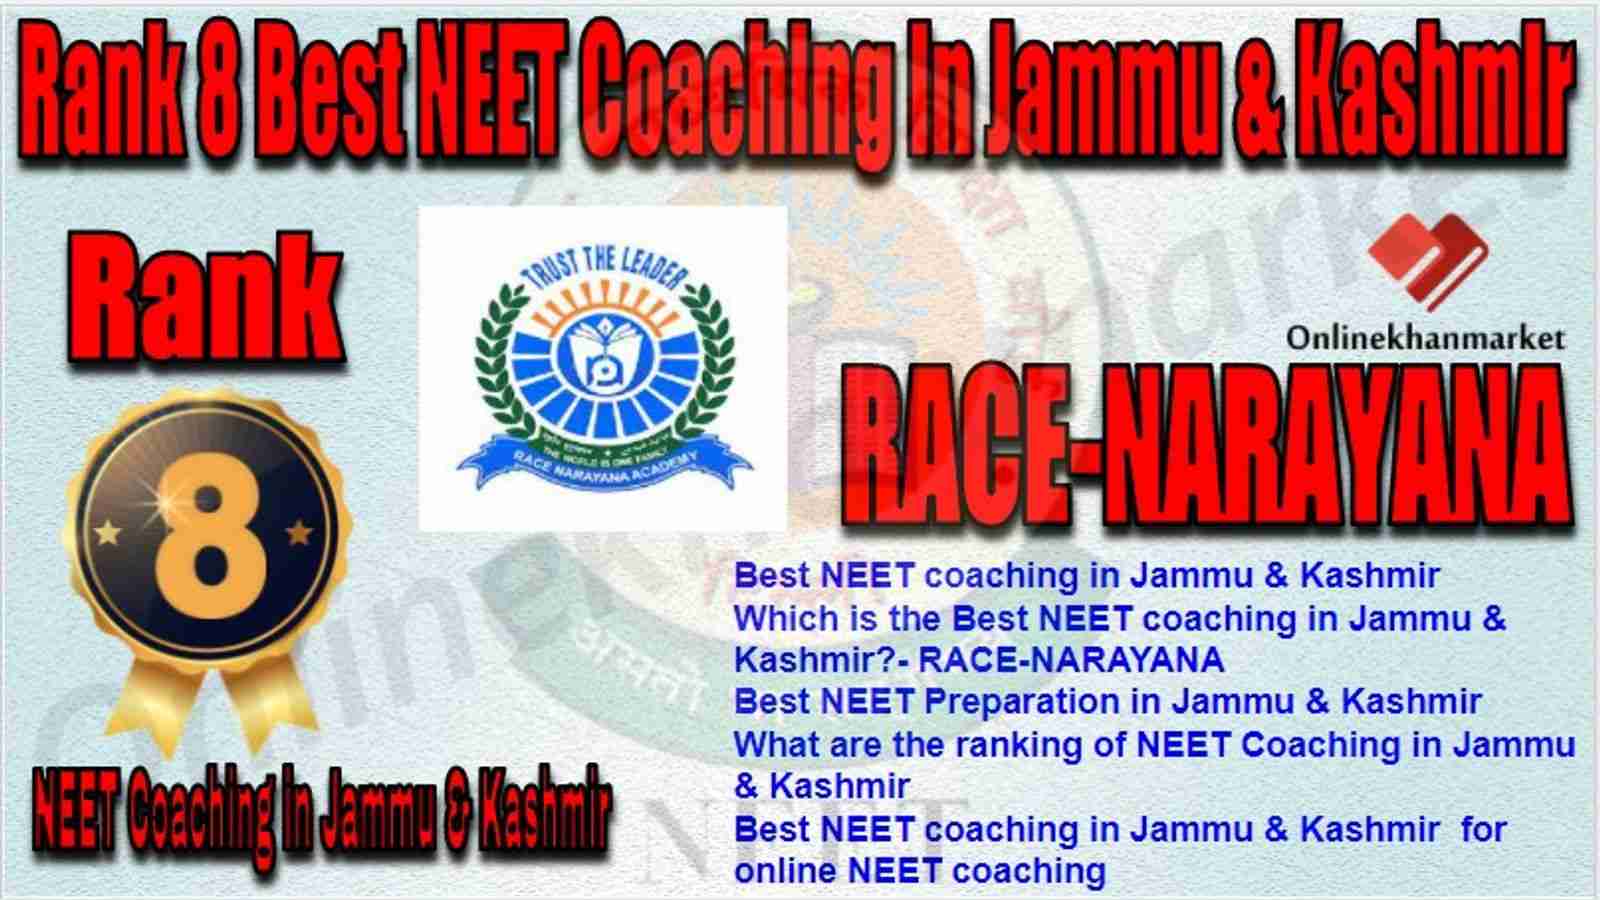 Rank 8 Best NEET Coaching in jammu &kashmir